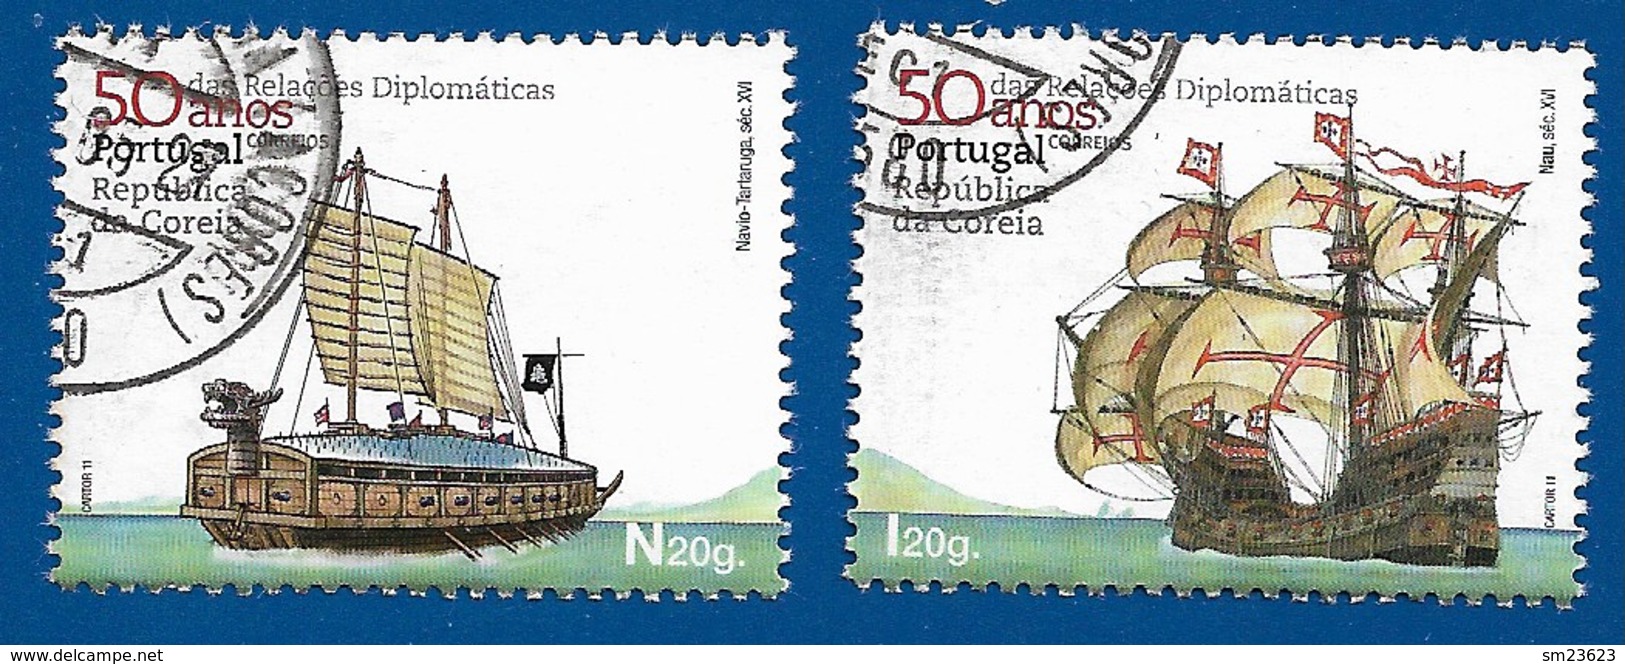 Portugal   2011  Mi.Nr. 3619 / 3620 , 50 Anos Das Relacöes Diplomaticas - Gestempelt / Fine Used / (o) - Used Stamps